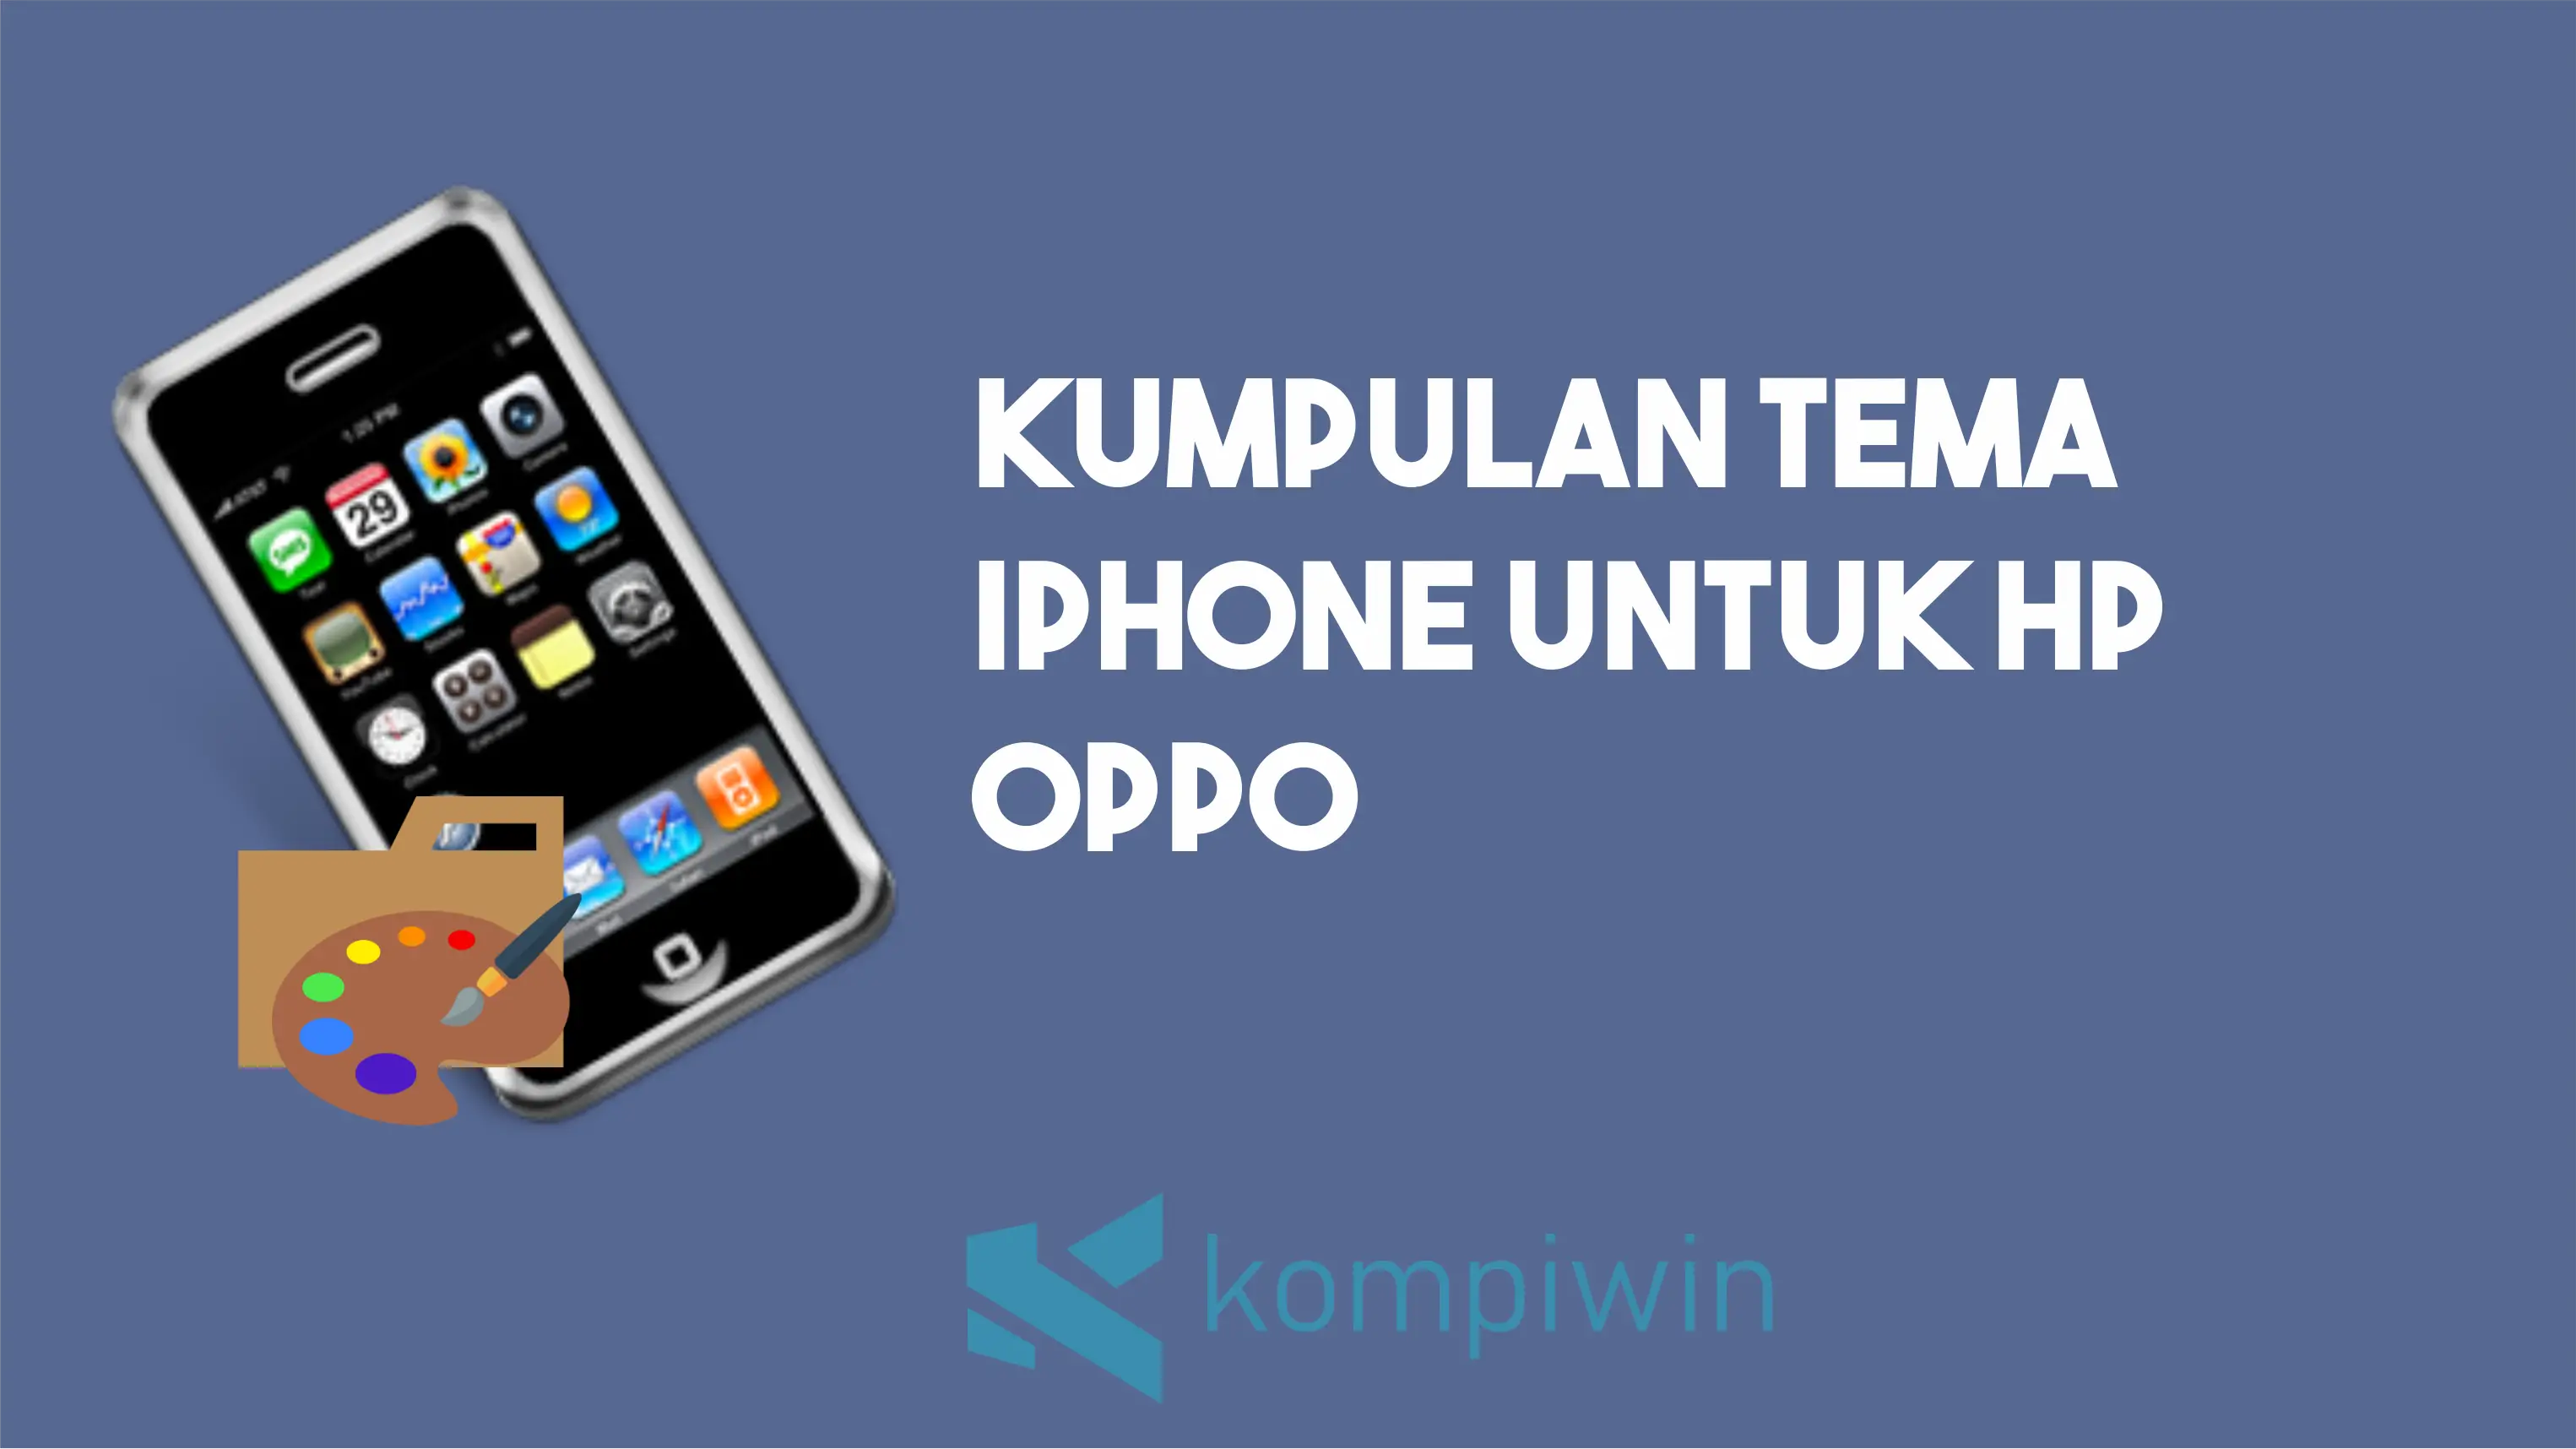 Kumpulan Tema iPhone Untuk HP Oppo